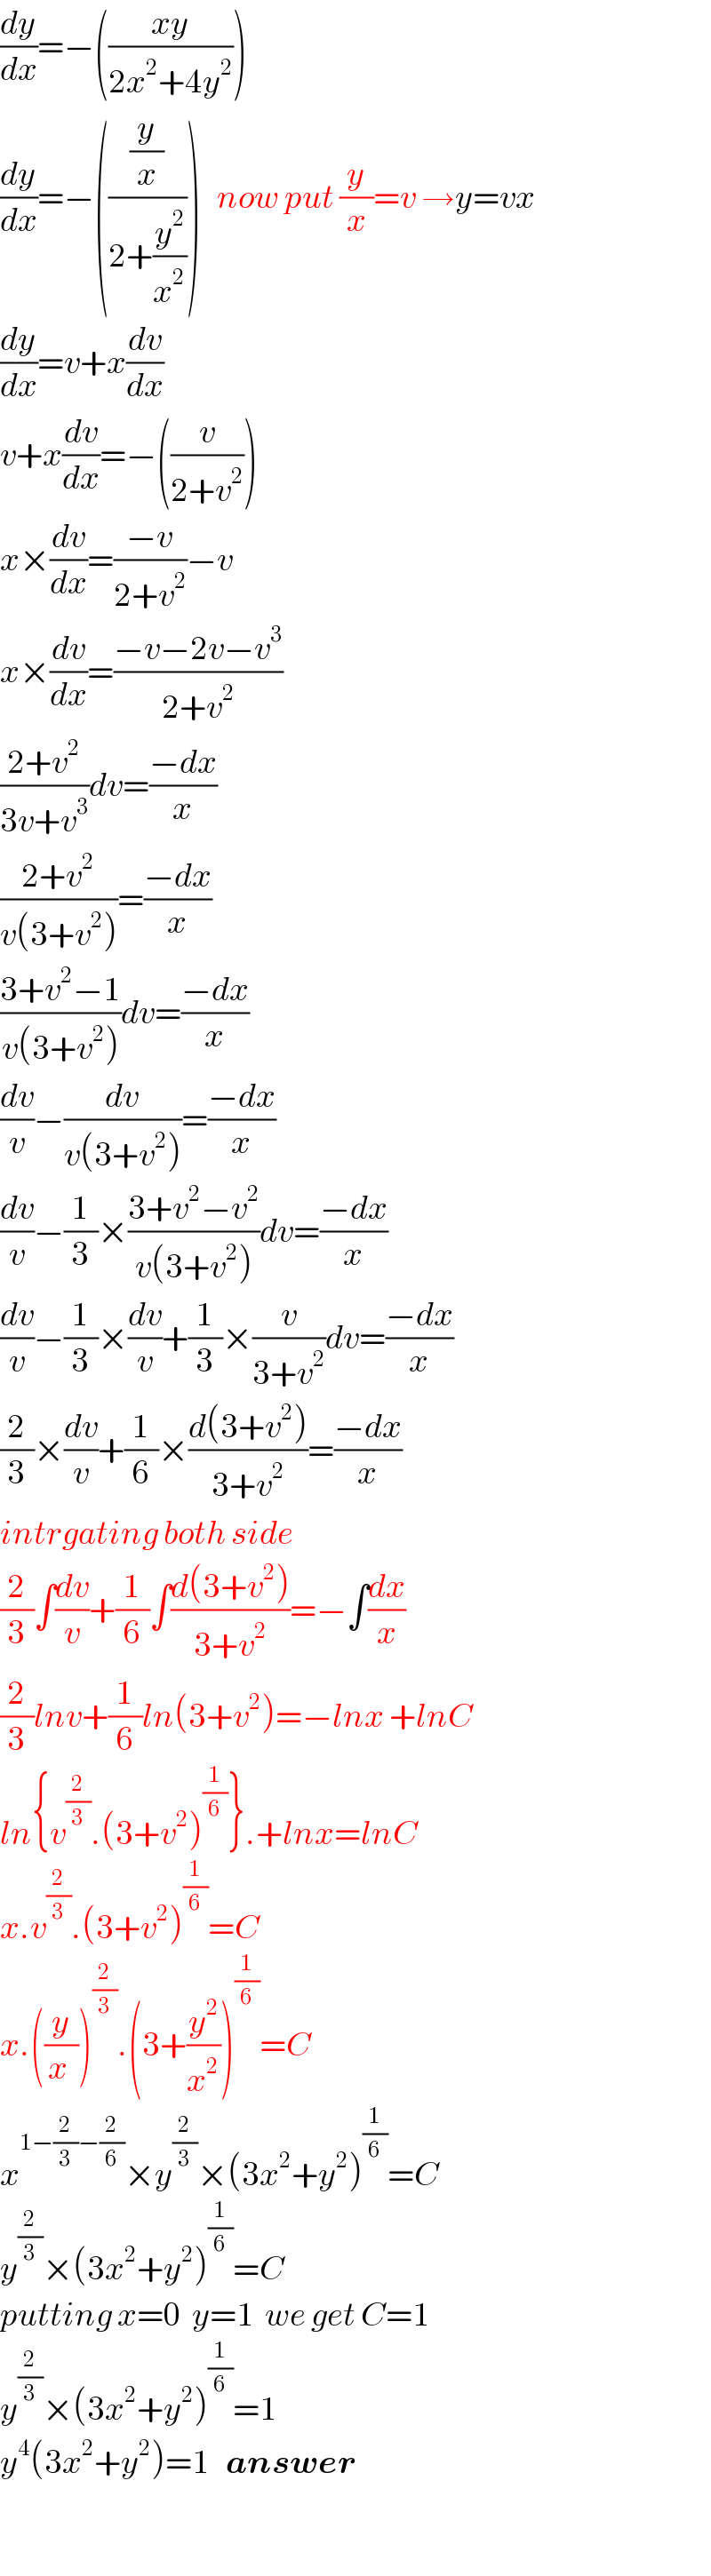 (dy/dx)=−(((xy)/(2x^2 +4y^2 )))  (dy/dx)=−(((y/x)/(2+(y^2 /x^2 ))))   now put (y/x)=v →y=vx  (dy/dx)=v+x(dv/dx)  v+x(dv/dx)=−((v/(2+v^2 )))  x×(dv/dx)=((−v)/(2+v^2 ))−v  x×(dv/dx)=((−v−2v−v^3 )/(2+v^2 ))  ((2+v^2 )/(3v+v^3 ))dv=((−dx)/x)  ((2+v^2 )/(v(3+v^2 )))=((−dx)/x)  ((3+v^2 −1)/(v(3+v^2 )))dv=((−dx)/x)  (dv/v)−(dv/(v(3+v^2 )))=((−dx)/x)  (dv/v)−(1/3)×((3+v^2 −v^2 )/(v(3+v^2 )))dv=((−dx)/x)  (dv/v)−(1/3)×(dv/v)+(1/3)×(v/(3+v^2 ))dv=((−dx)/x)  (2/3)×(dv/v)+(1/6)×((d(3+v^2 ))/(3+v^2 ))=((−dx)/x)  intrgating both side  (2/3)∫(dv/v)+(1/6)∫((d(3+v^2 ))/(3+v^2 ))=−∫(dx/x)  (2/3)lnv+(1/6)ln(3+v^2 )=−lnx +lnC  ln{v^(2/3) .(3+v^2 )^(1/6) }.+lnx=lnC  x.v^(2/3) .(3+v^2 )^(1/6) =C  x.((y/(x )))^(2/3) .(3+(y^2 /x^2 ))^(1/6) =C  x^(1−(2/3)−(2/6)) ×y^(2/3) ×(3x^2 +y^2 )^(1/6) =C  y^(2/3) ×(3x^2 +y^2 )^(1/6) =C  putting x=0  y=1  we get C=1  y^(2/3) ×(3x^2 +y^2 )^(1/6) =1  y^4 (3x^2 +y^2 )=1   answer    